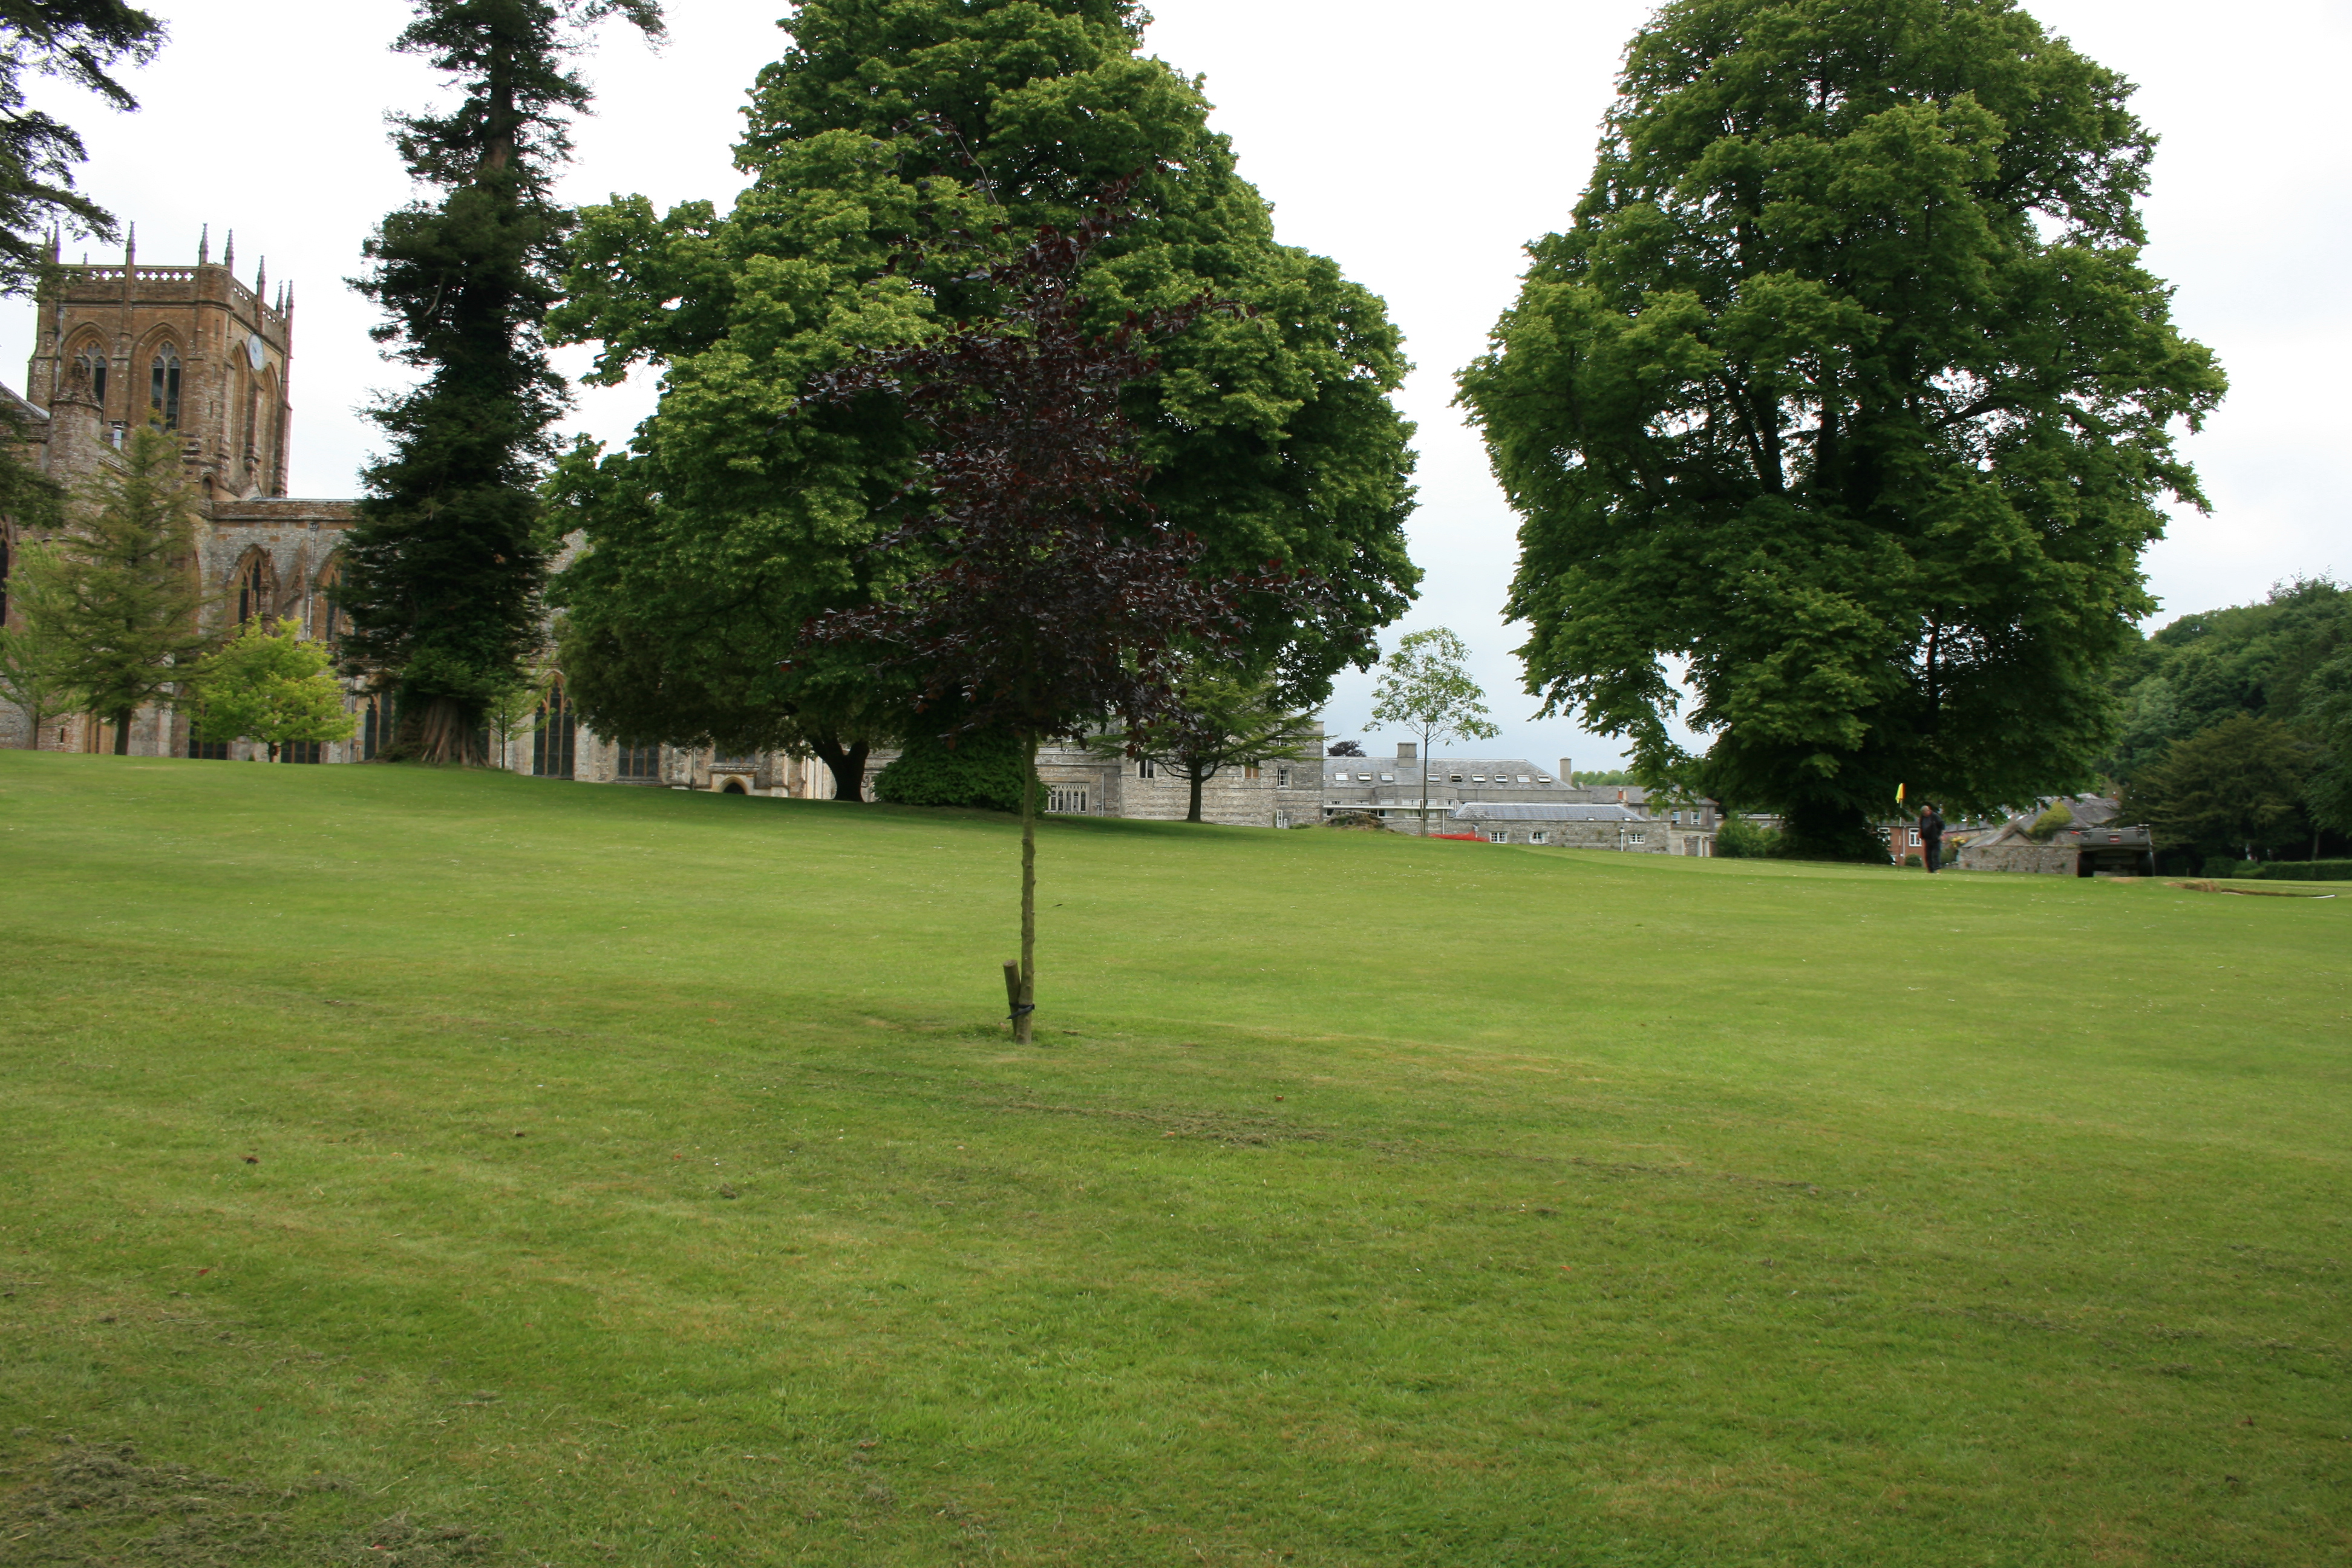 Milton Abbey park